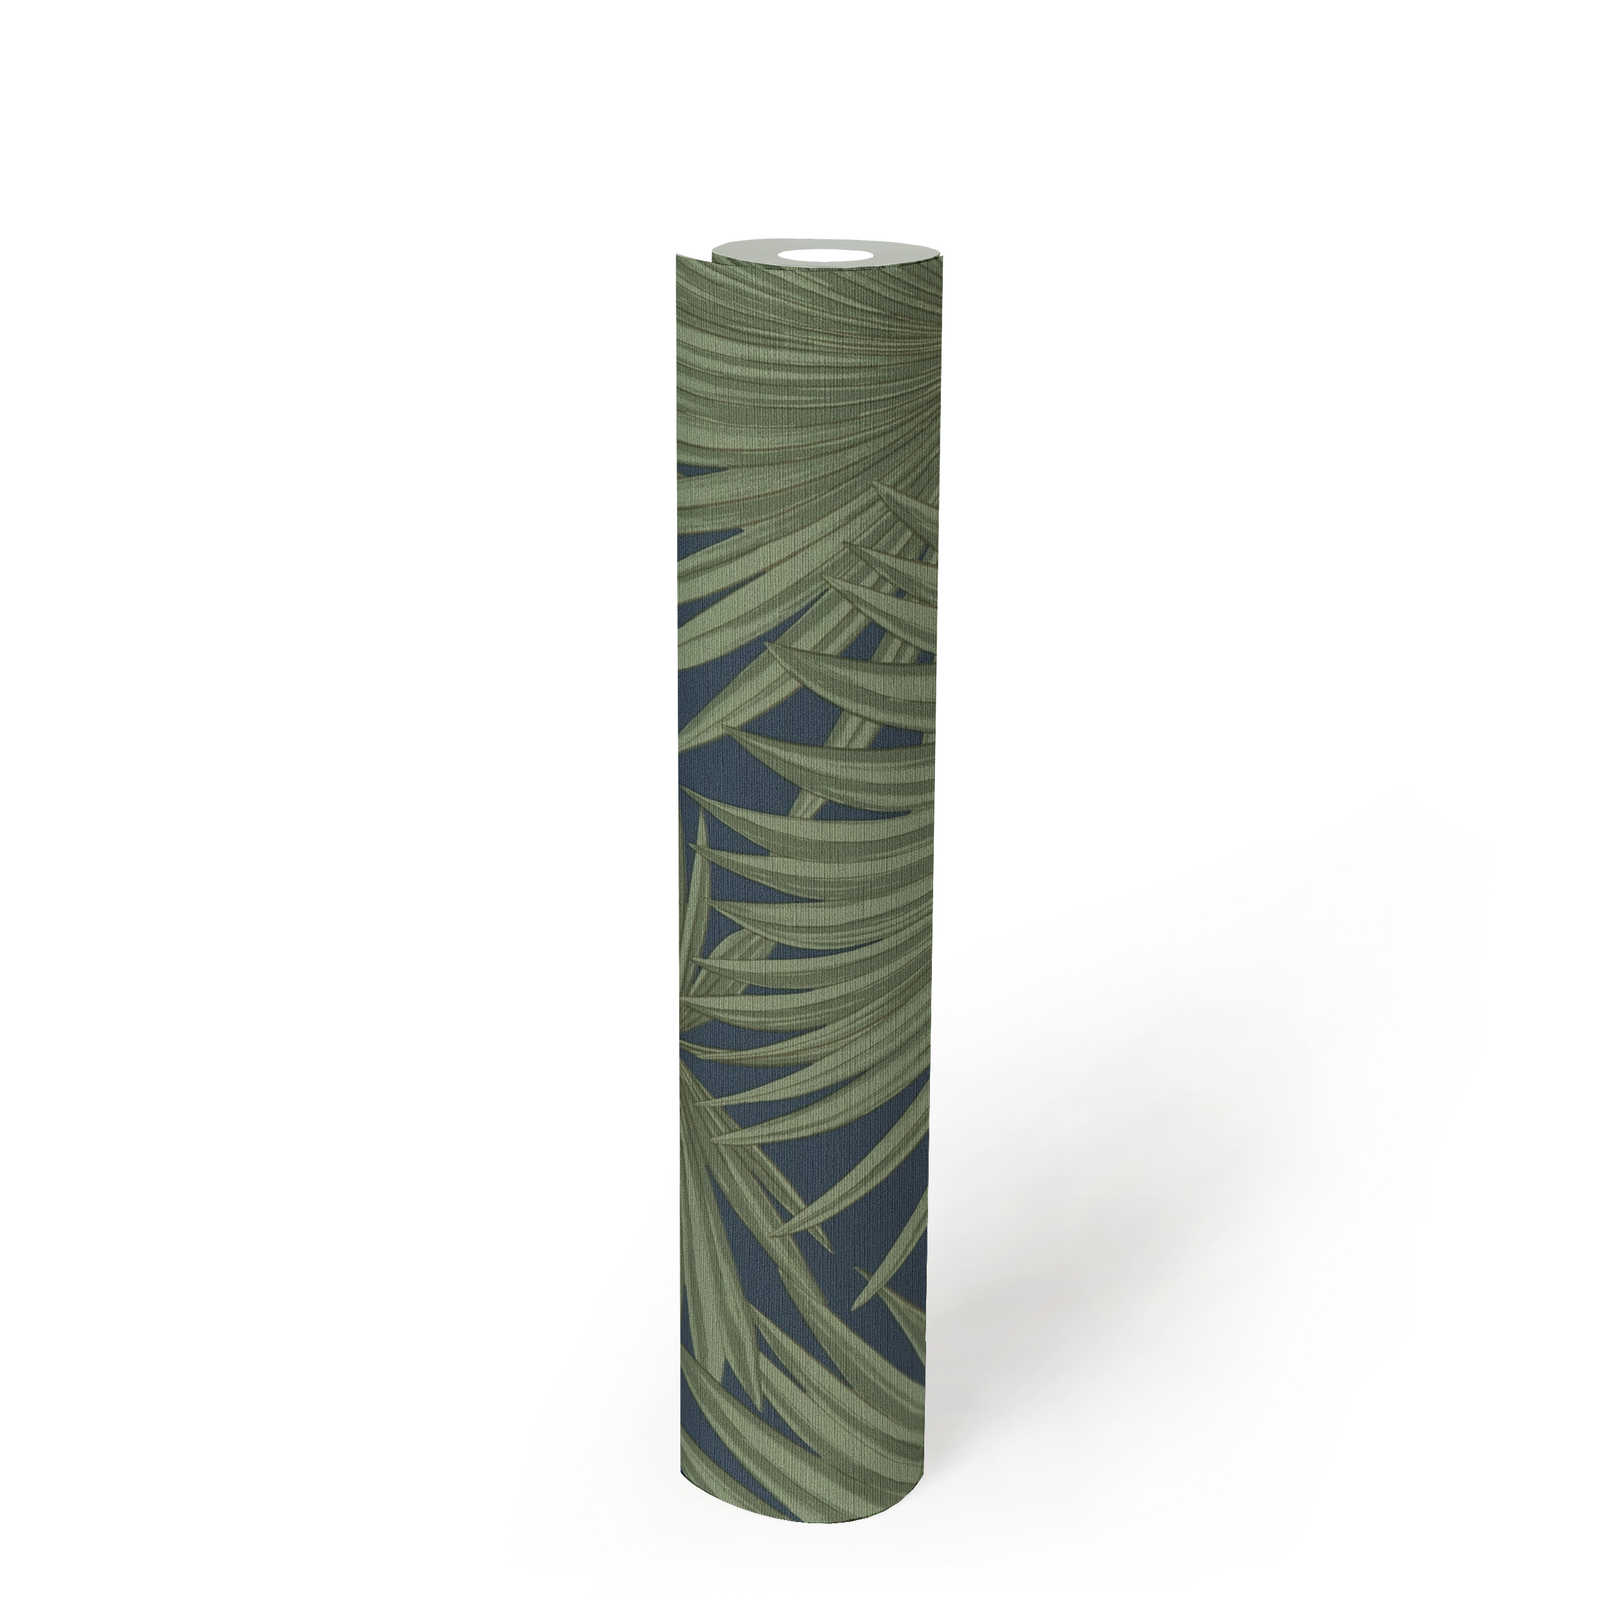             Papier peint intissé avec feuilles de palmier sur fond discret - vert, bleu
        